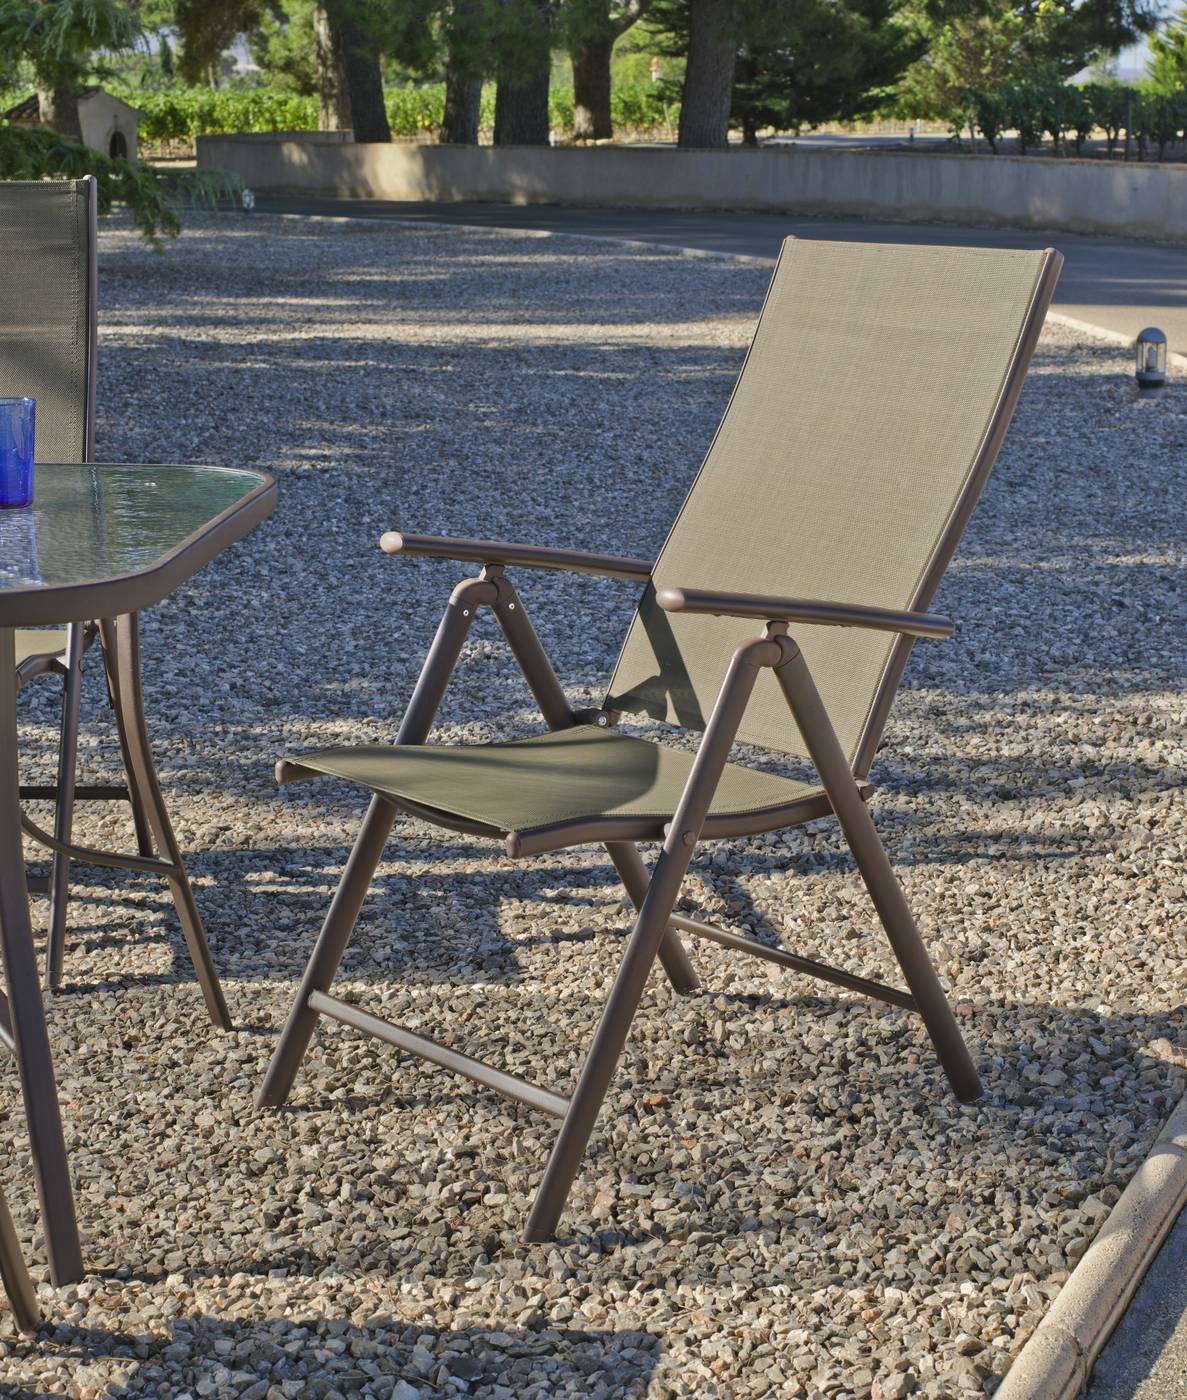 Set Acero Macao 150-4TB - Conjunto para jardiín color bronce: mesa de 150 cm con tapa de cristal templado + 4 tumbonas plegables multiposiciones